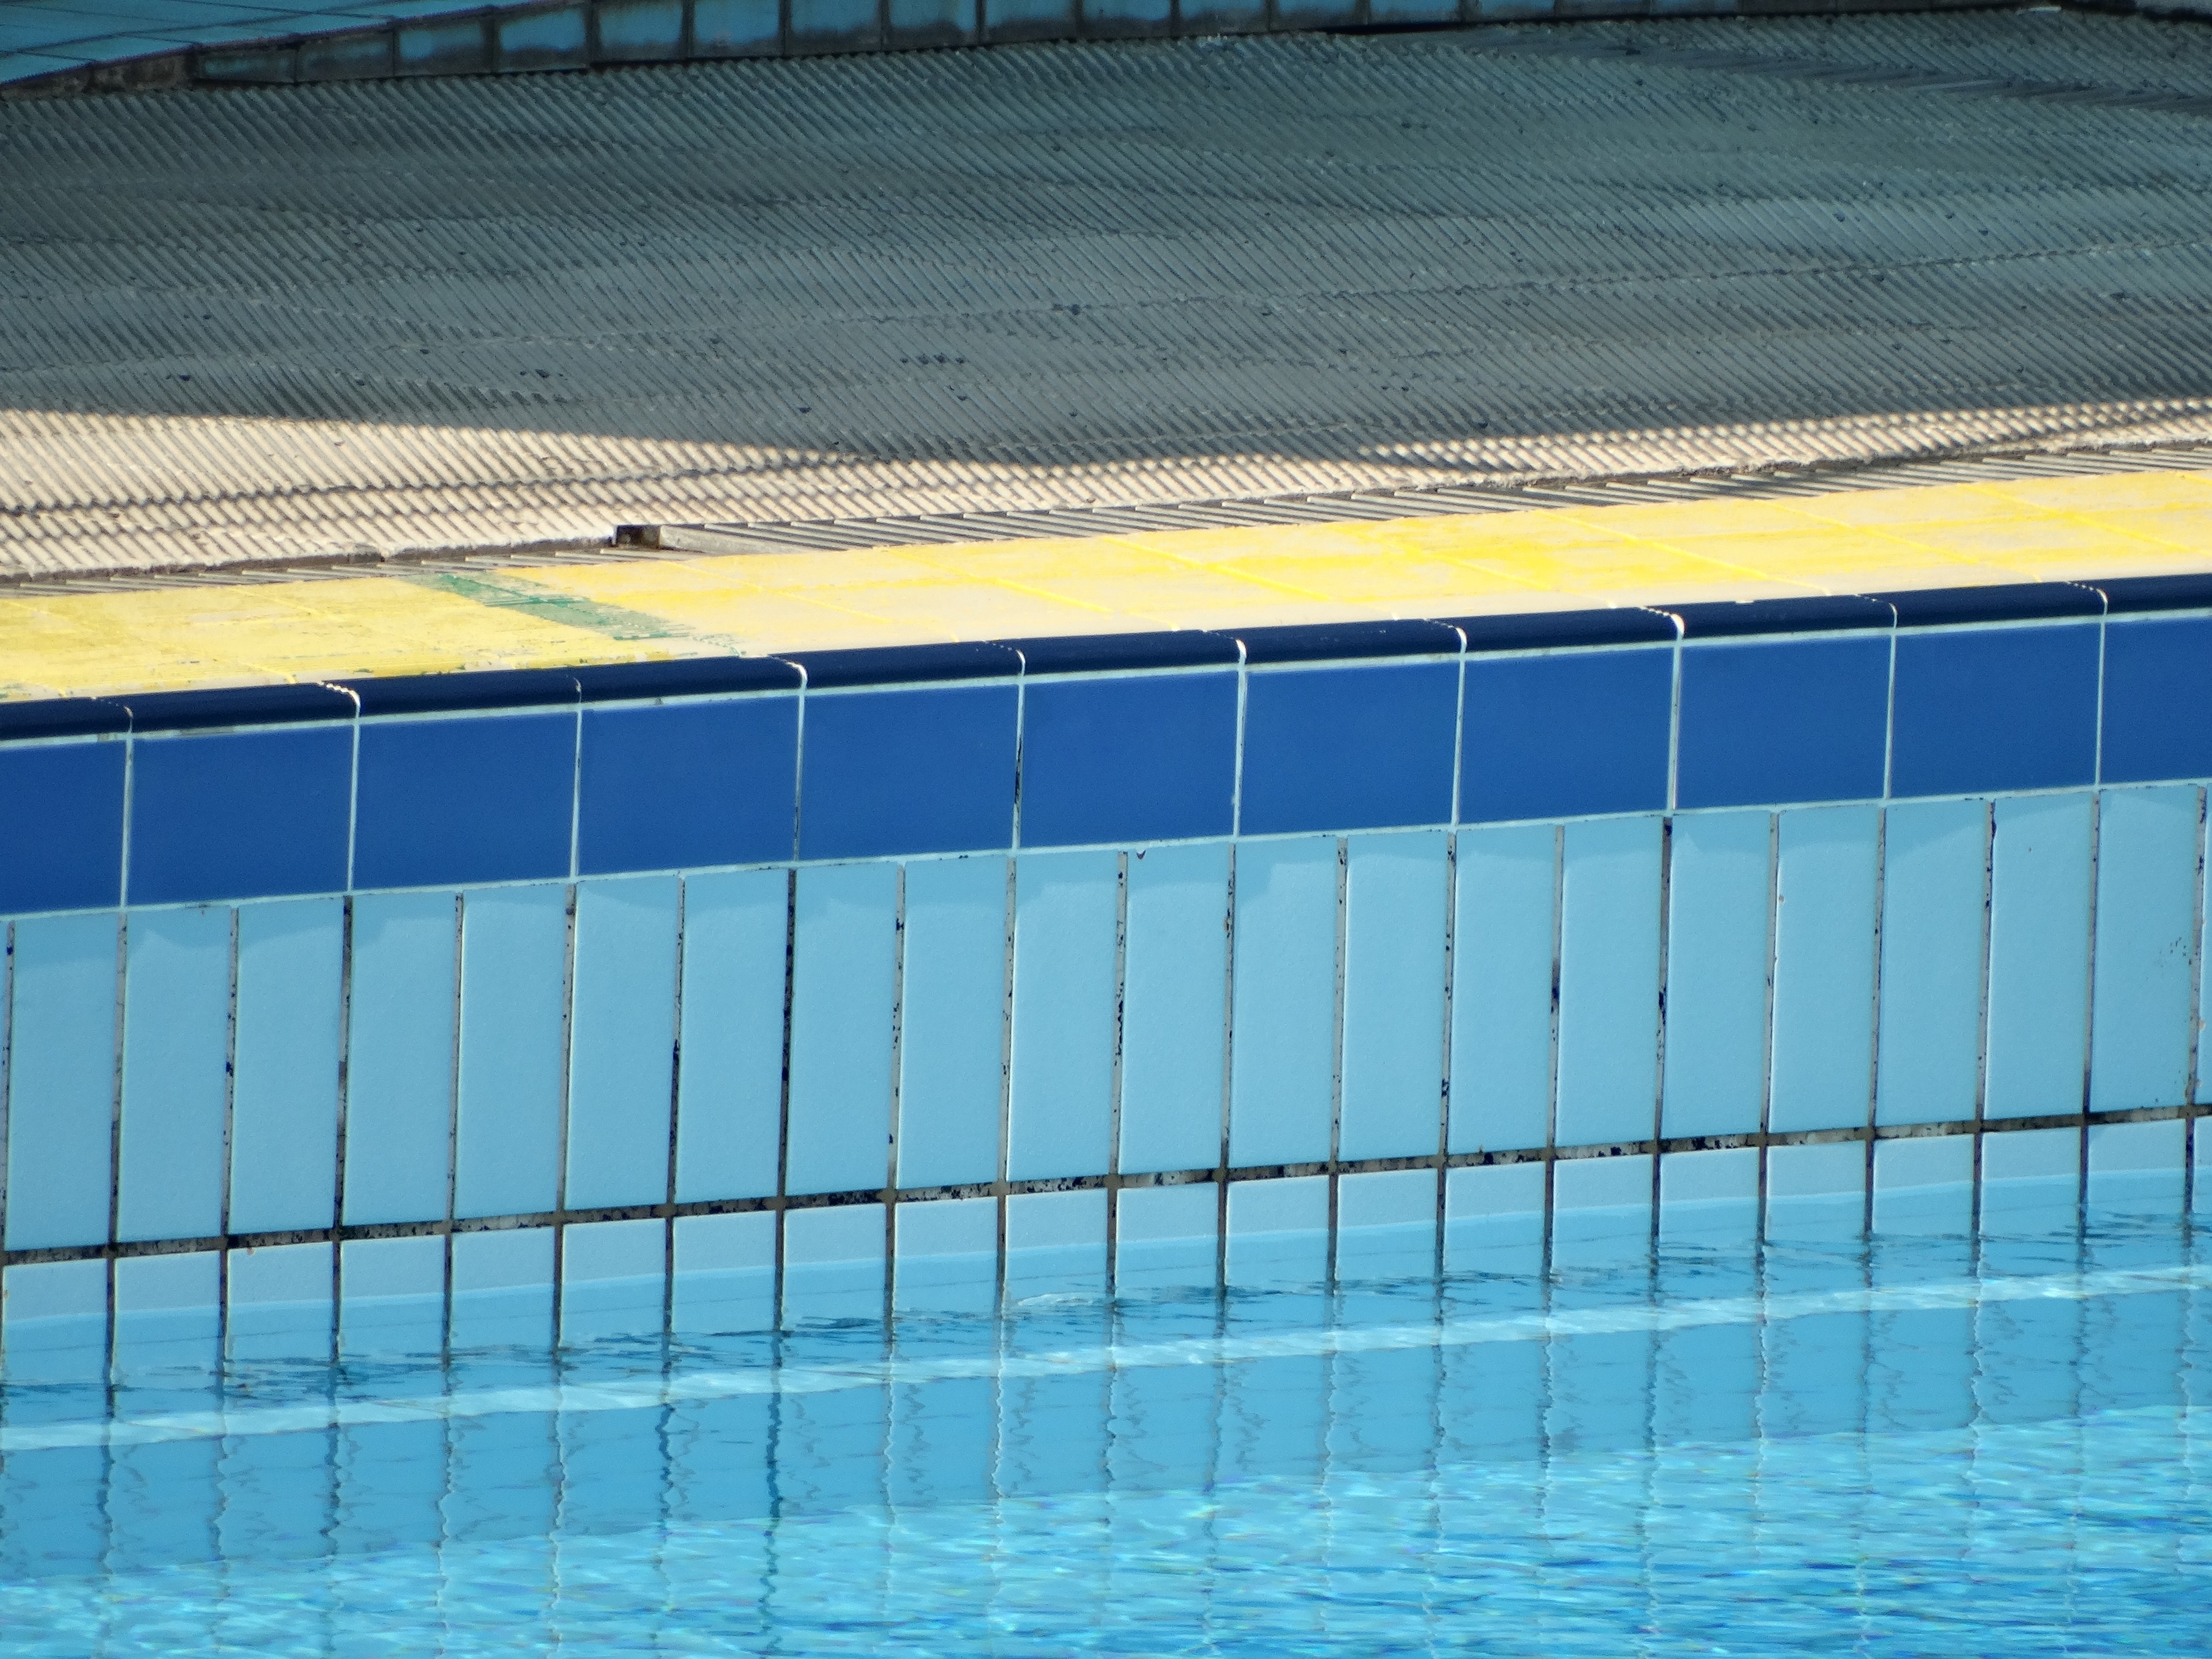 Πισίνα στο κολυμβητήριο Χανίων… χωρίς νερό! Τι συνέβη (φωτο)